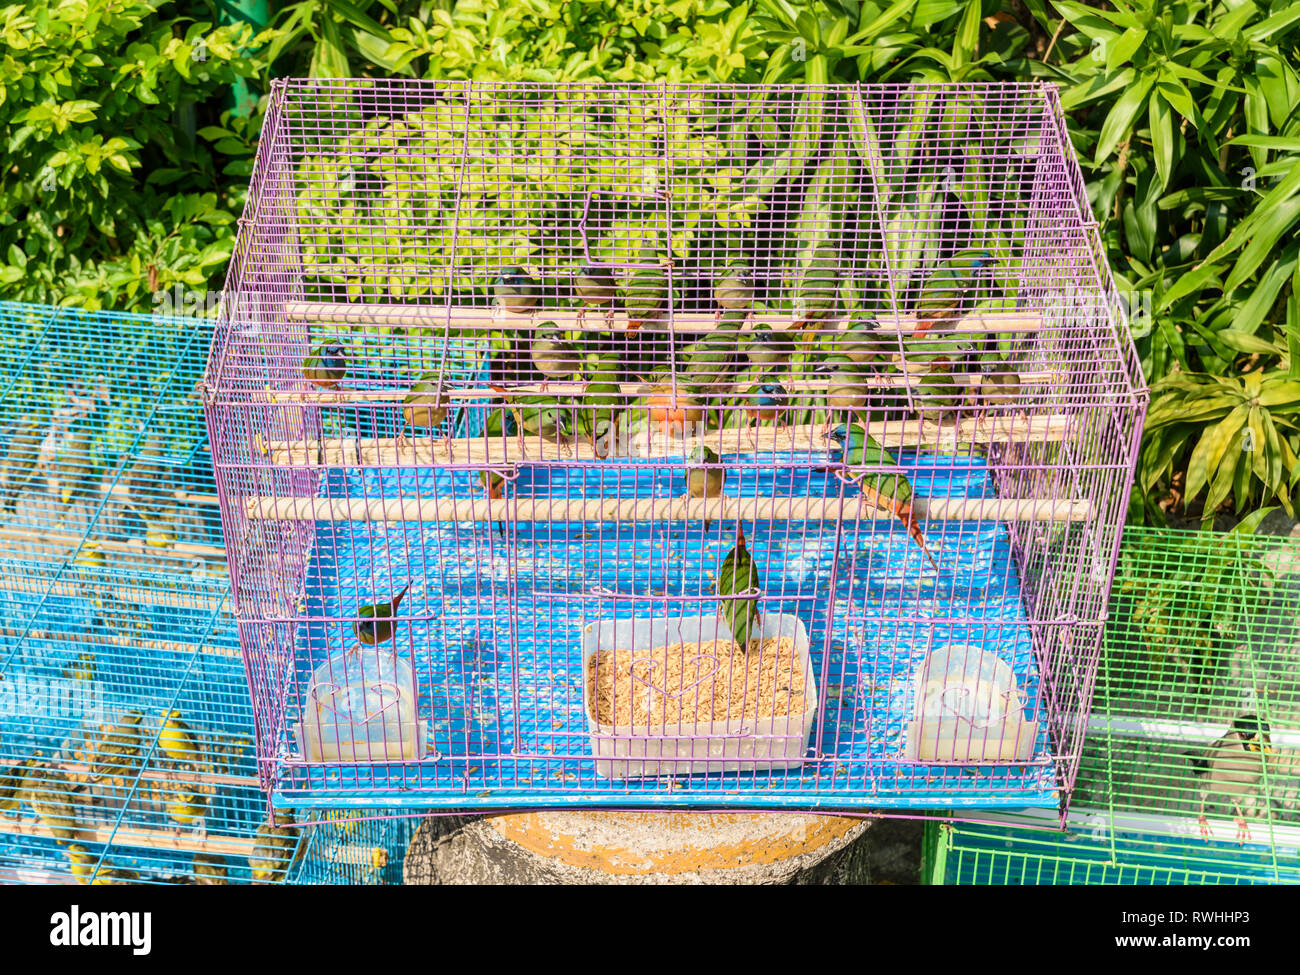 Birds in cages at the Yuen Po Street Bird Garden in Mong Kok, Hong Kong Stock Photo